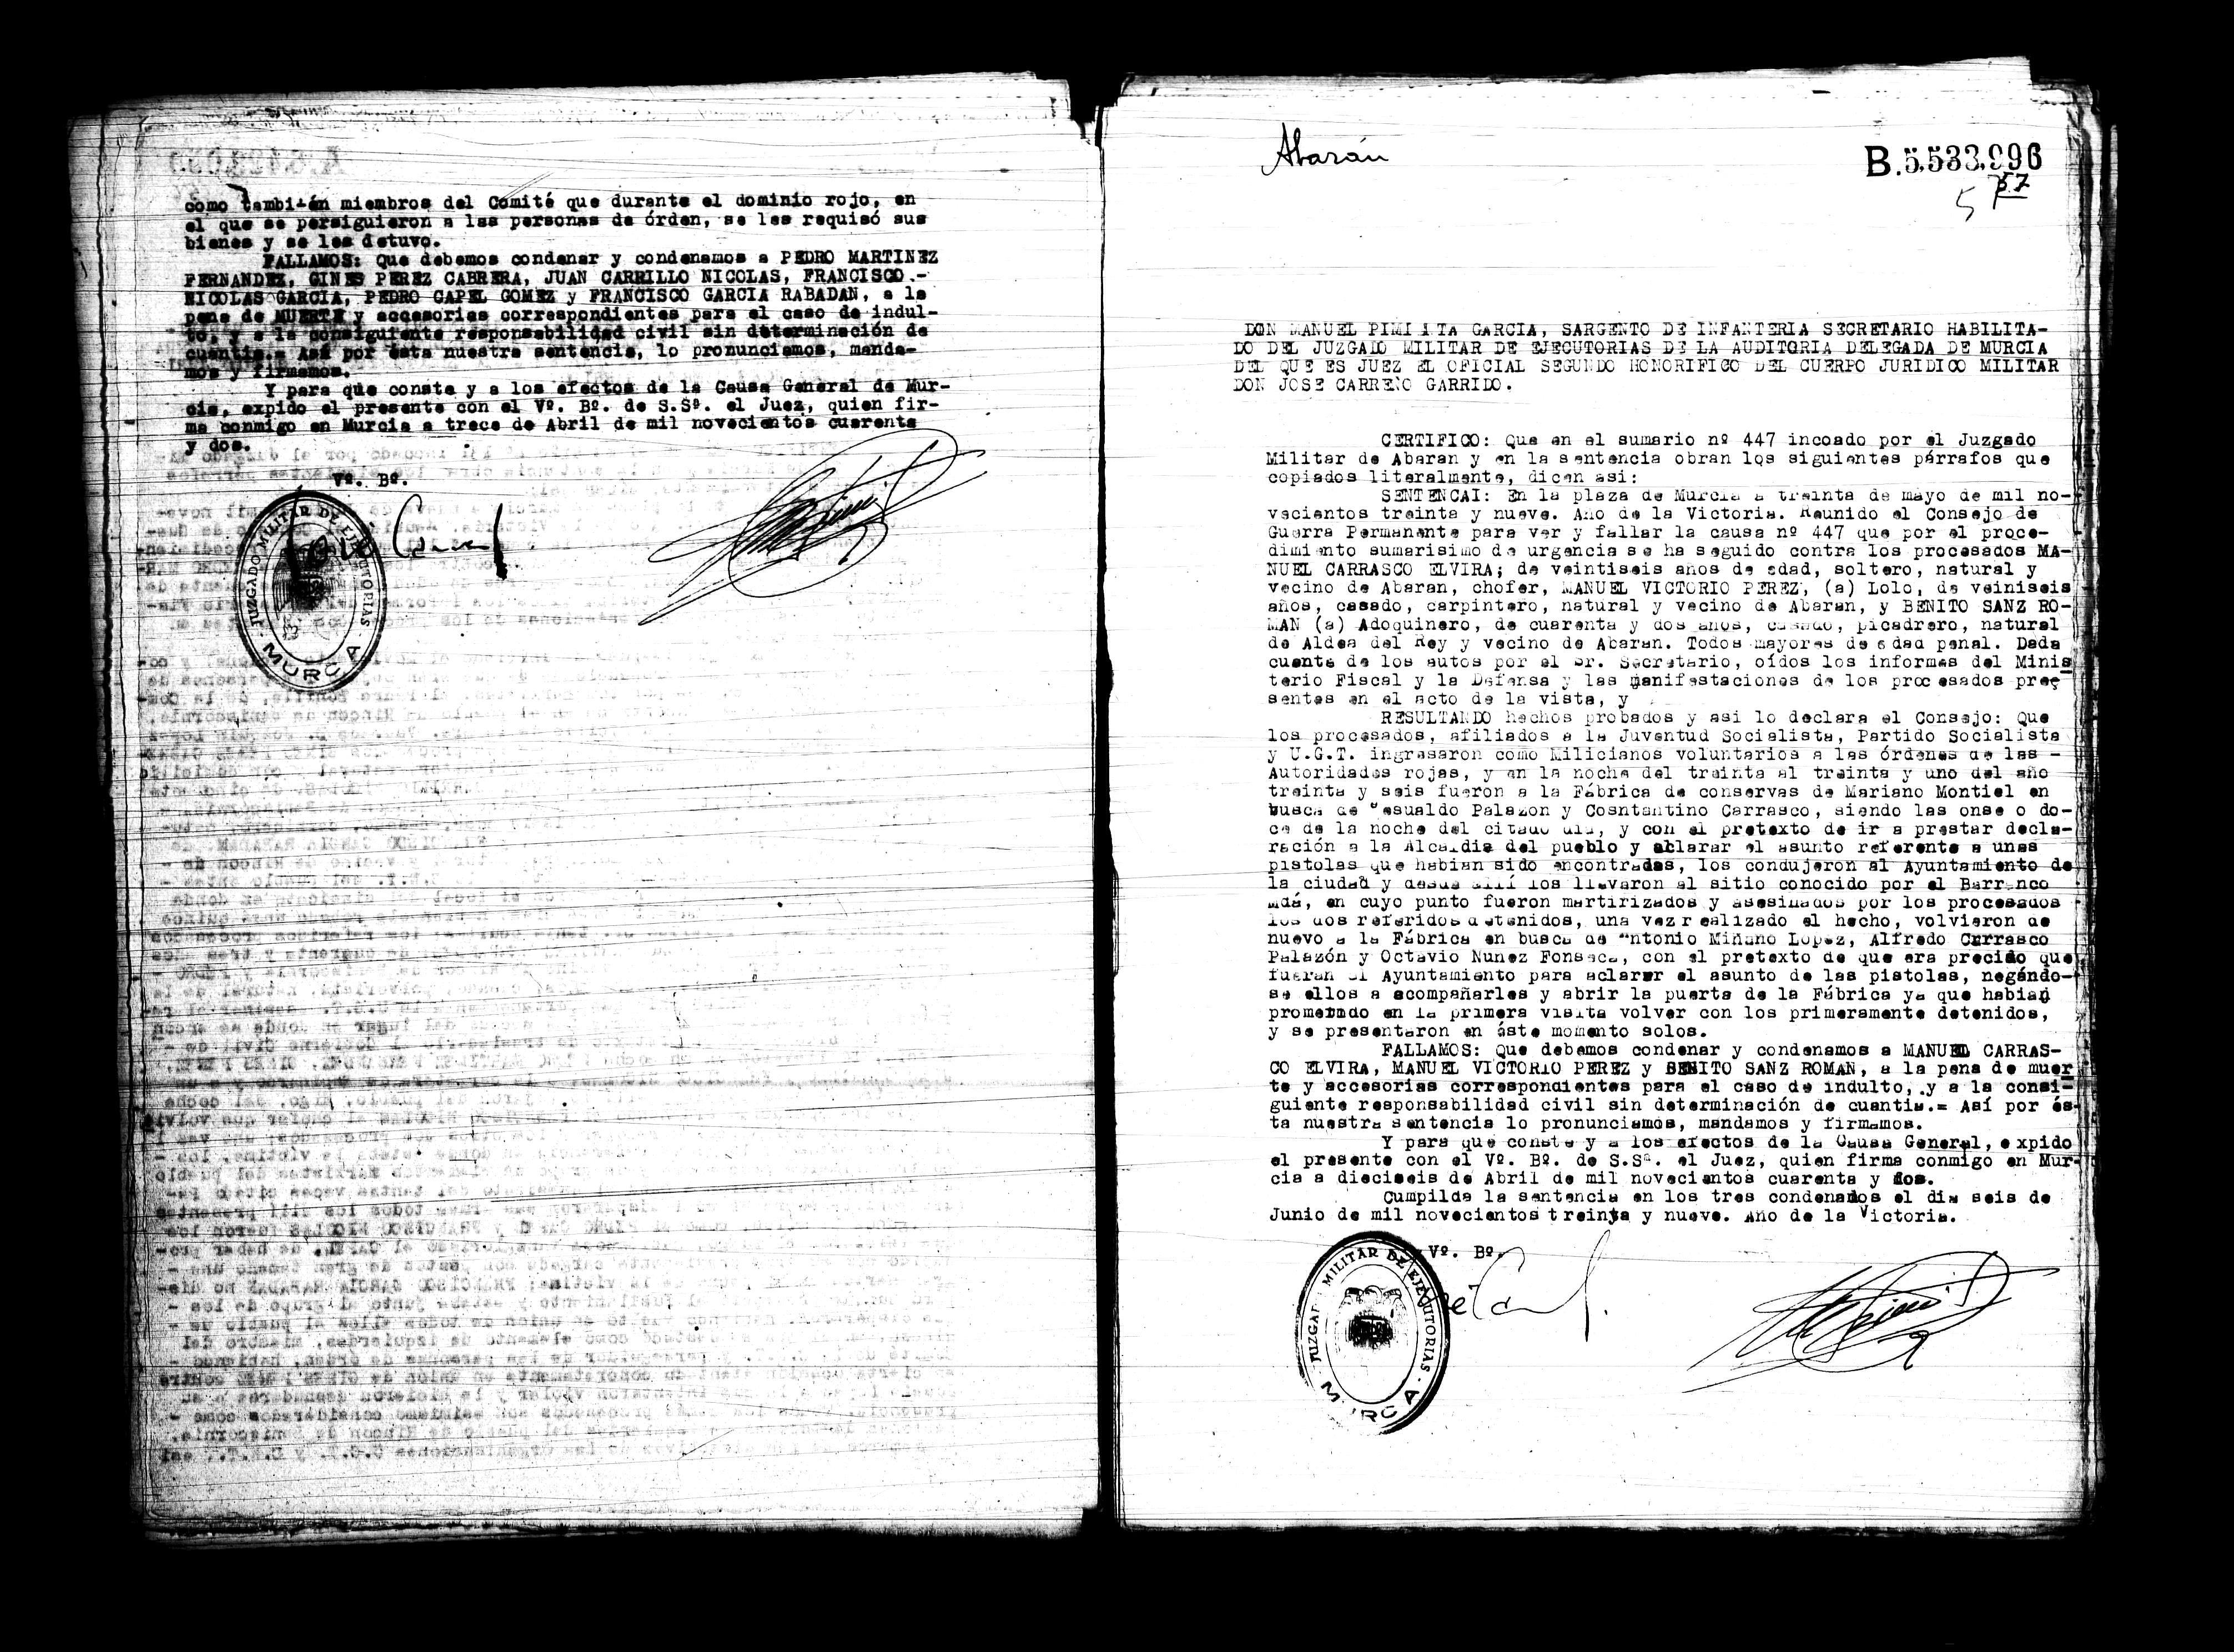 Certificado de la sentencia pronunciada contra Manuel Carrasco Elvira, Manuel Victorio Pérez y Benito Sanz Román, causa 447, el 30 de mayo de 1939 en Murcia.